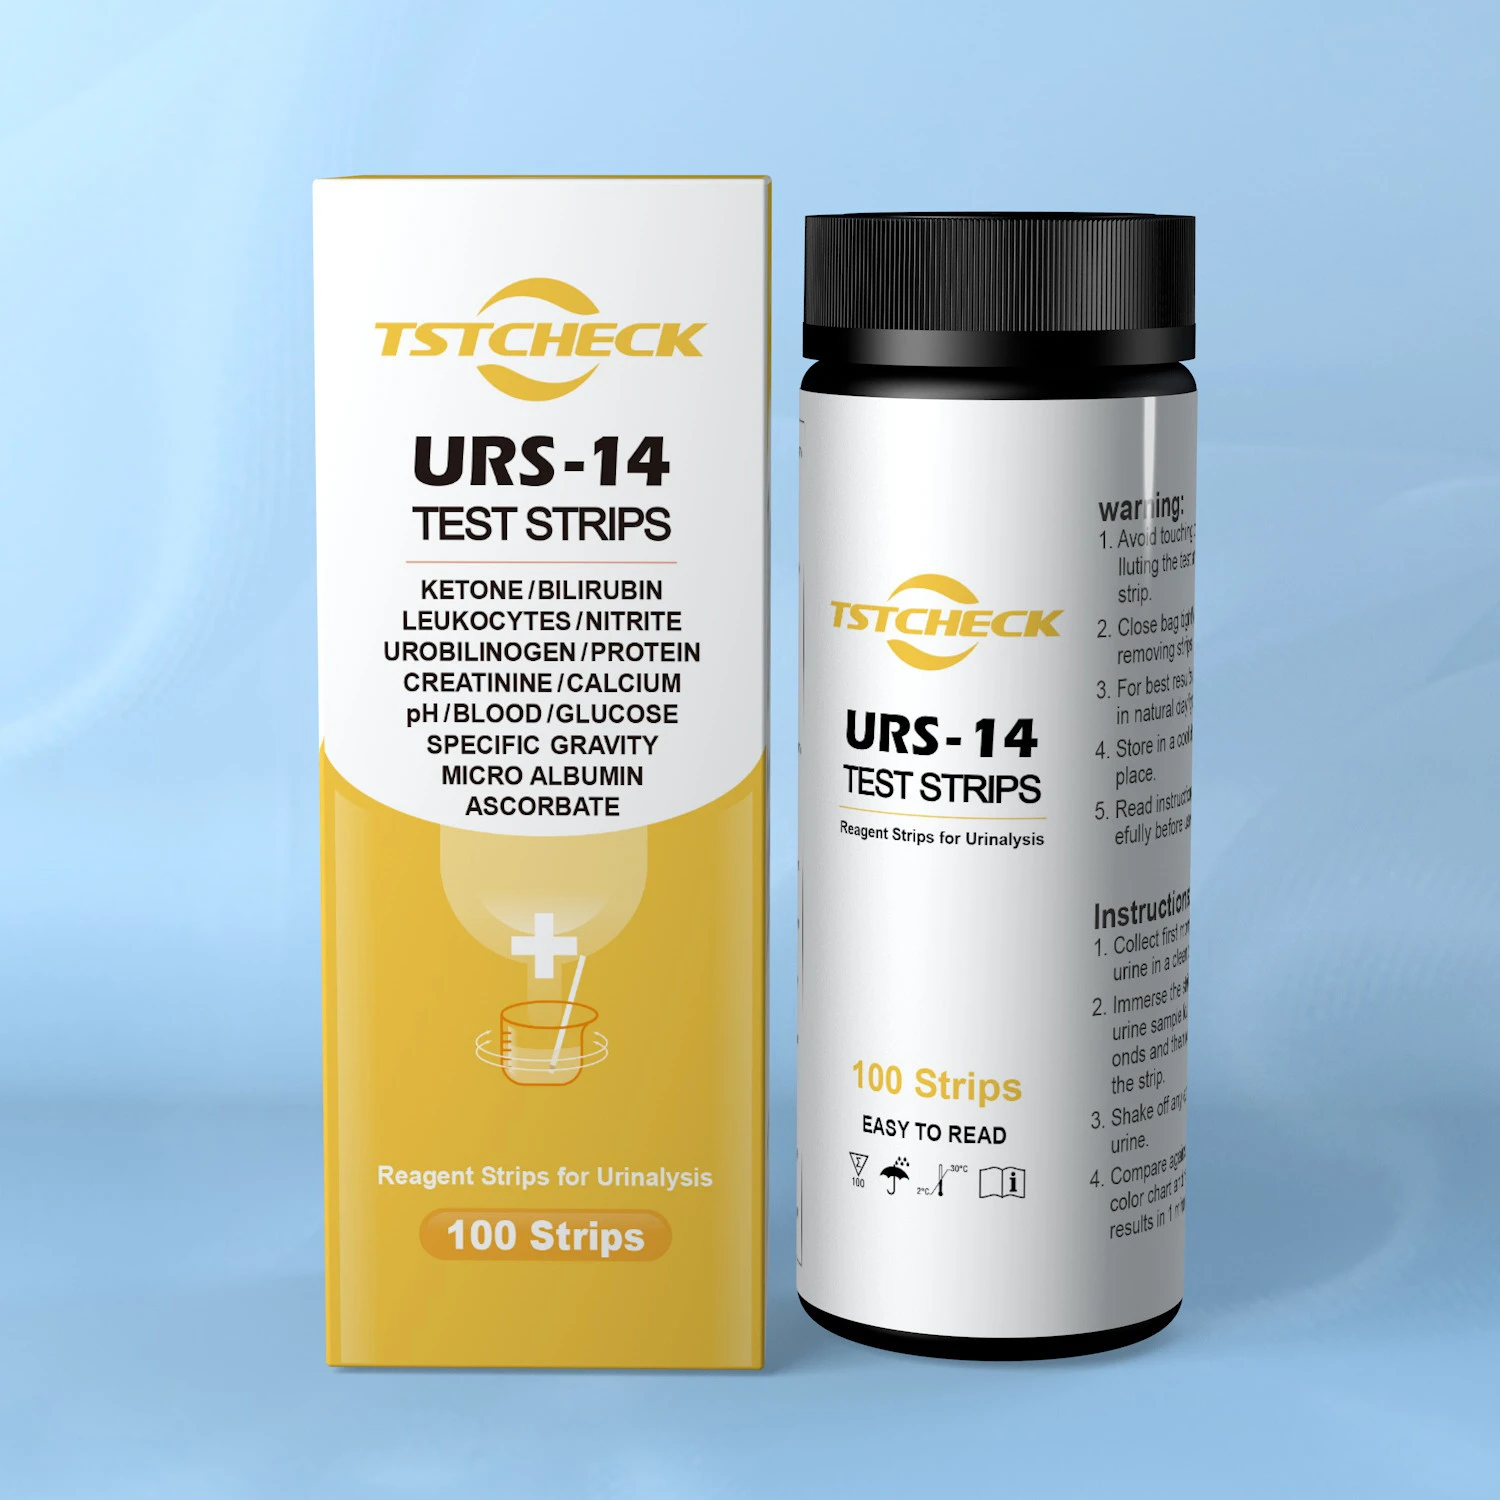 Urinalysis reagent urine test strips